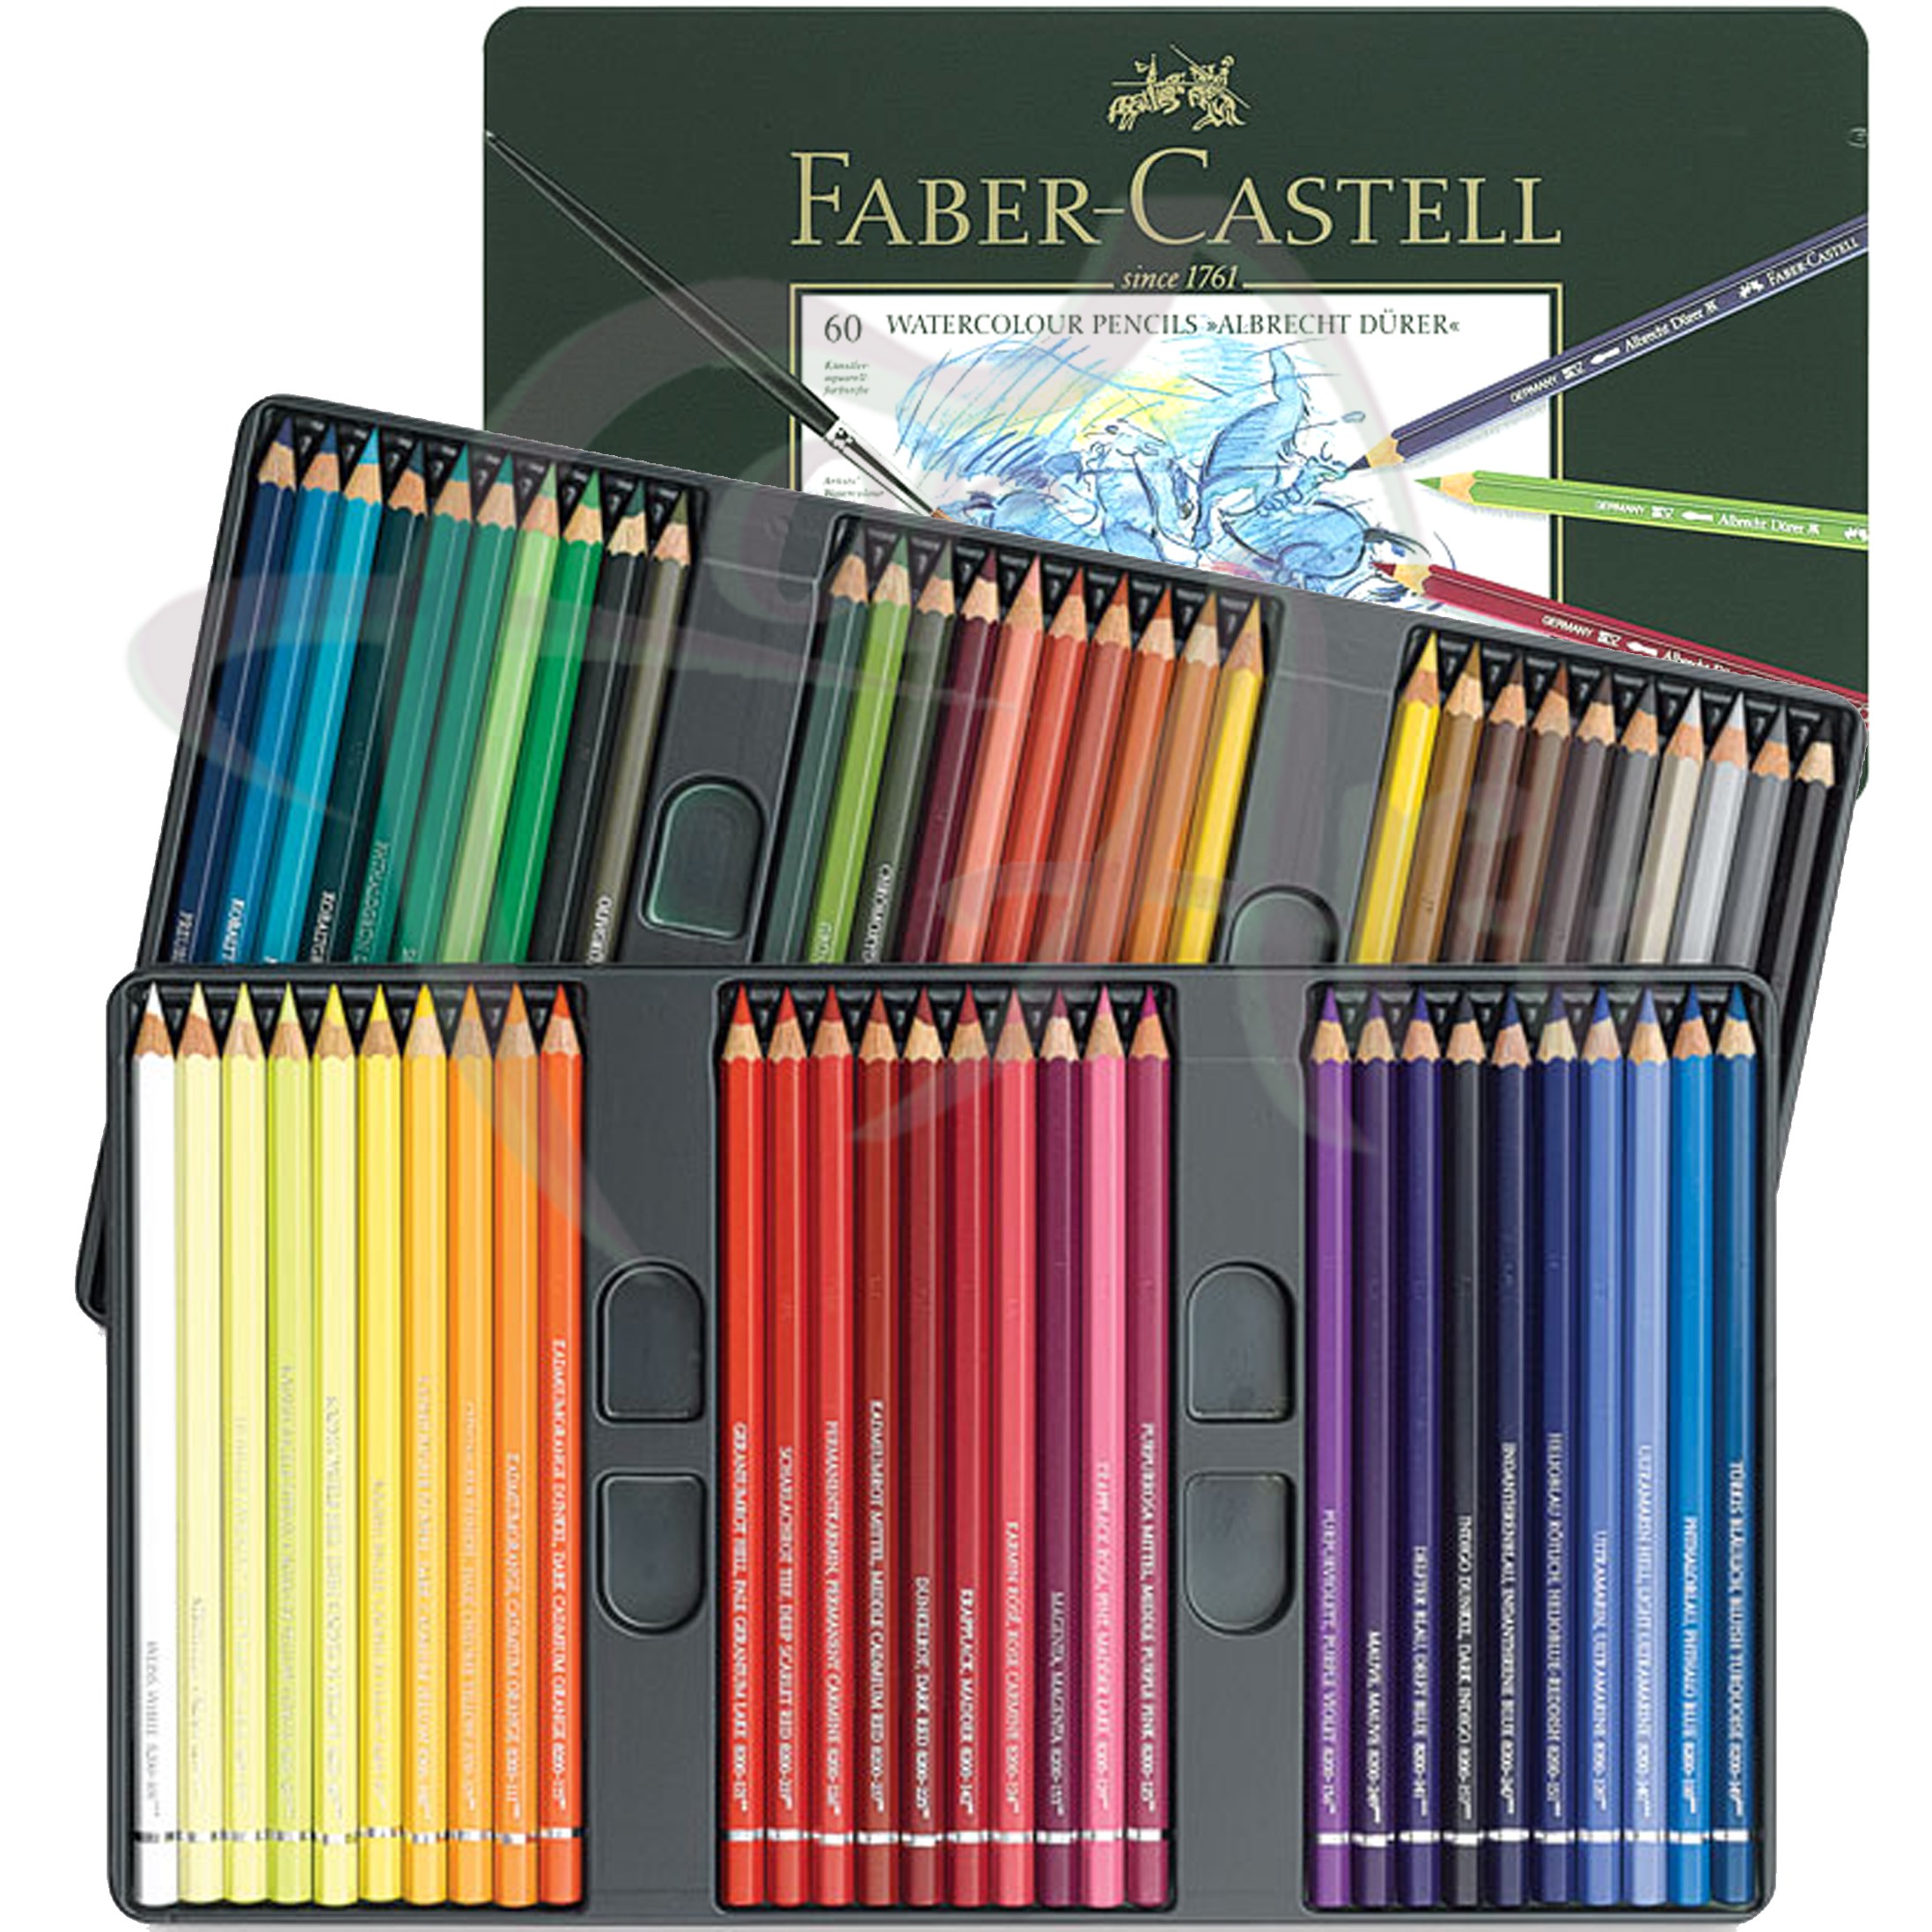 Набор профессиональных акварельных карандашей Faber-castell ALBRECHT DURER/60 цветов в металлической коробке